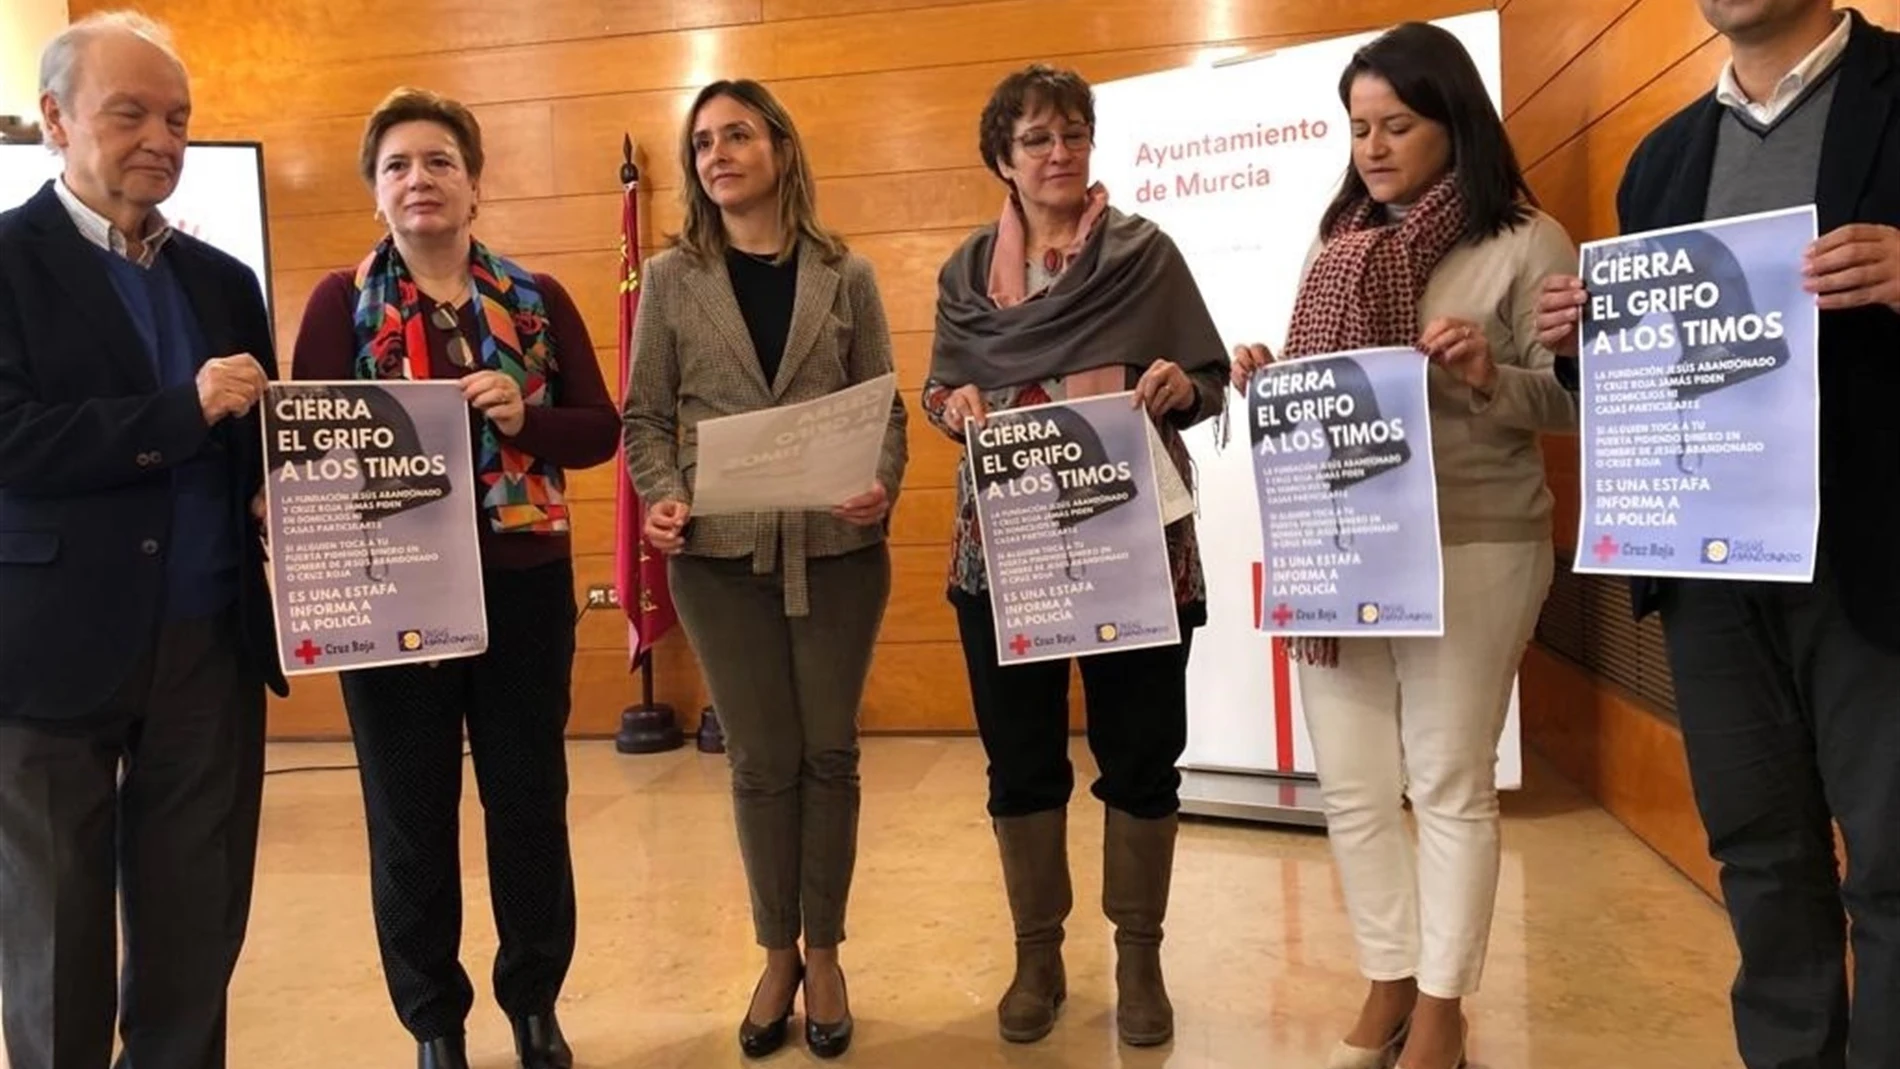 Representantes de Cruz Roja, Jesús Abandonado y del Ayuntamiento de Murcia